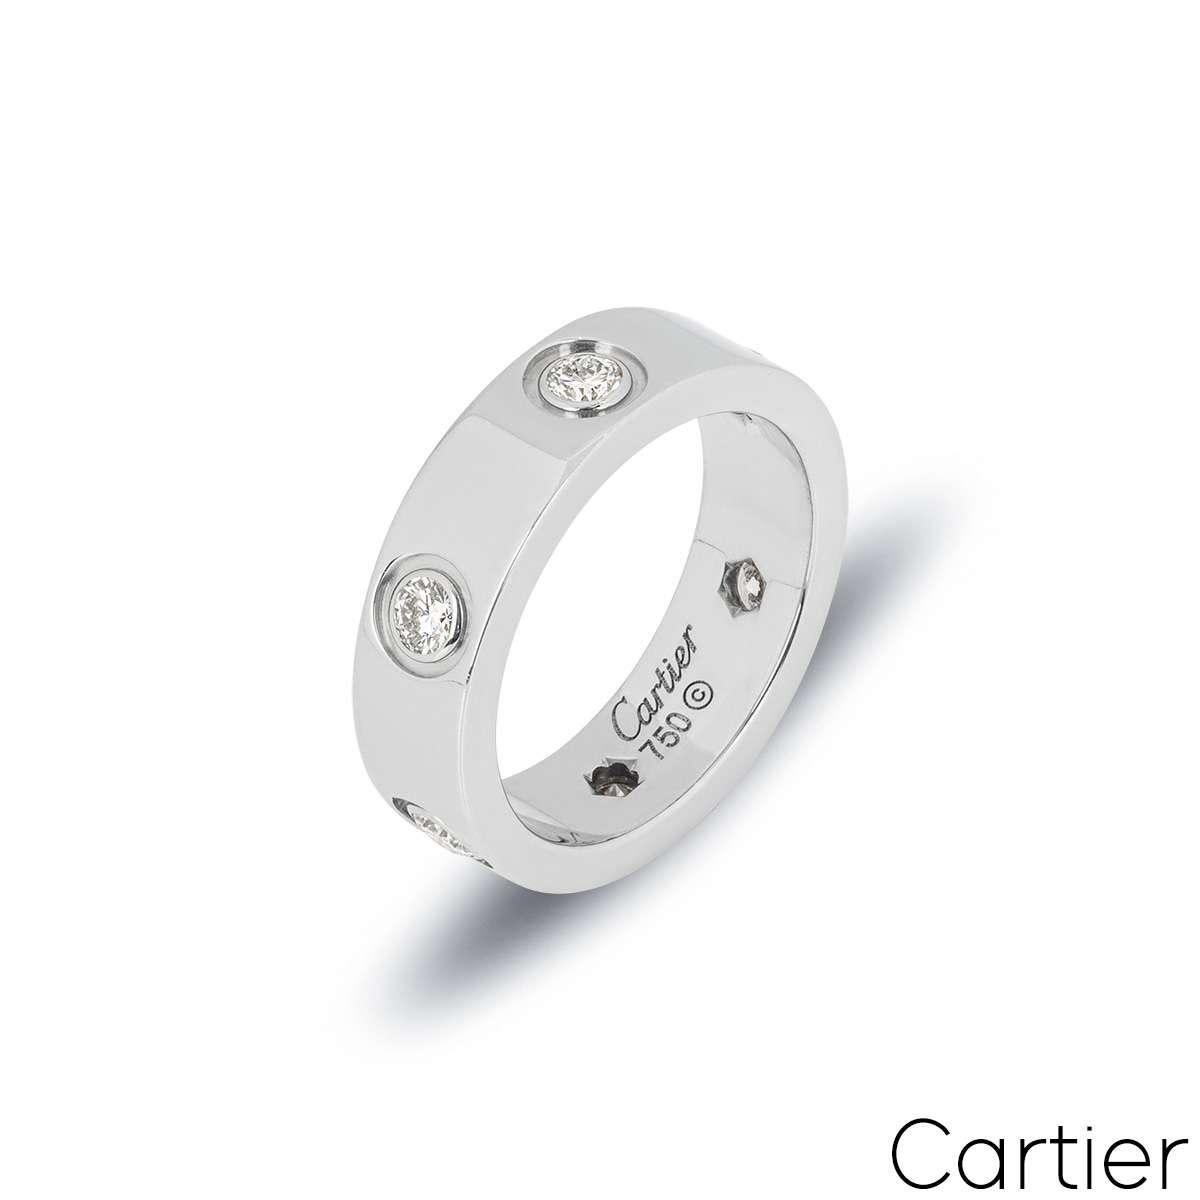 Ein ikonischer Ring aus 18 Karat Weißgold von Cartier aus der Collection'S Love. Der Ring besteht aus 6 runden Diamanten im Brillantschliff, die in der Mitte des Bandes gefasst sind. Mit einer Breite von 5,5 mm und einem Gewicht von 8,57 g